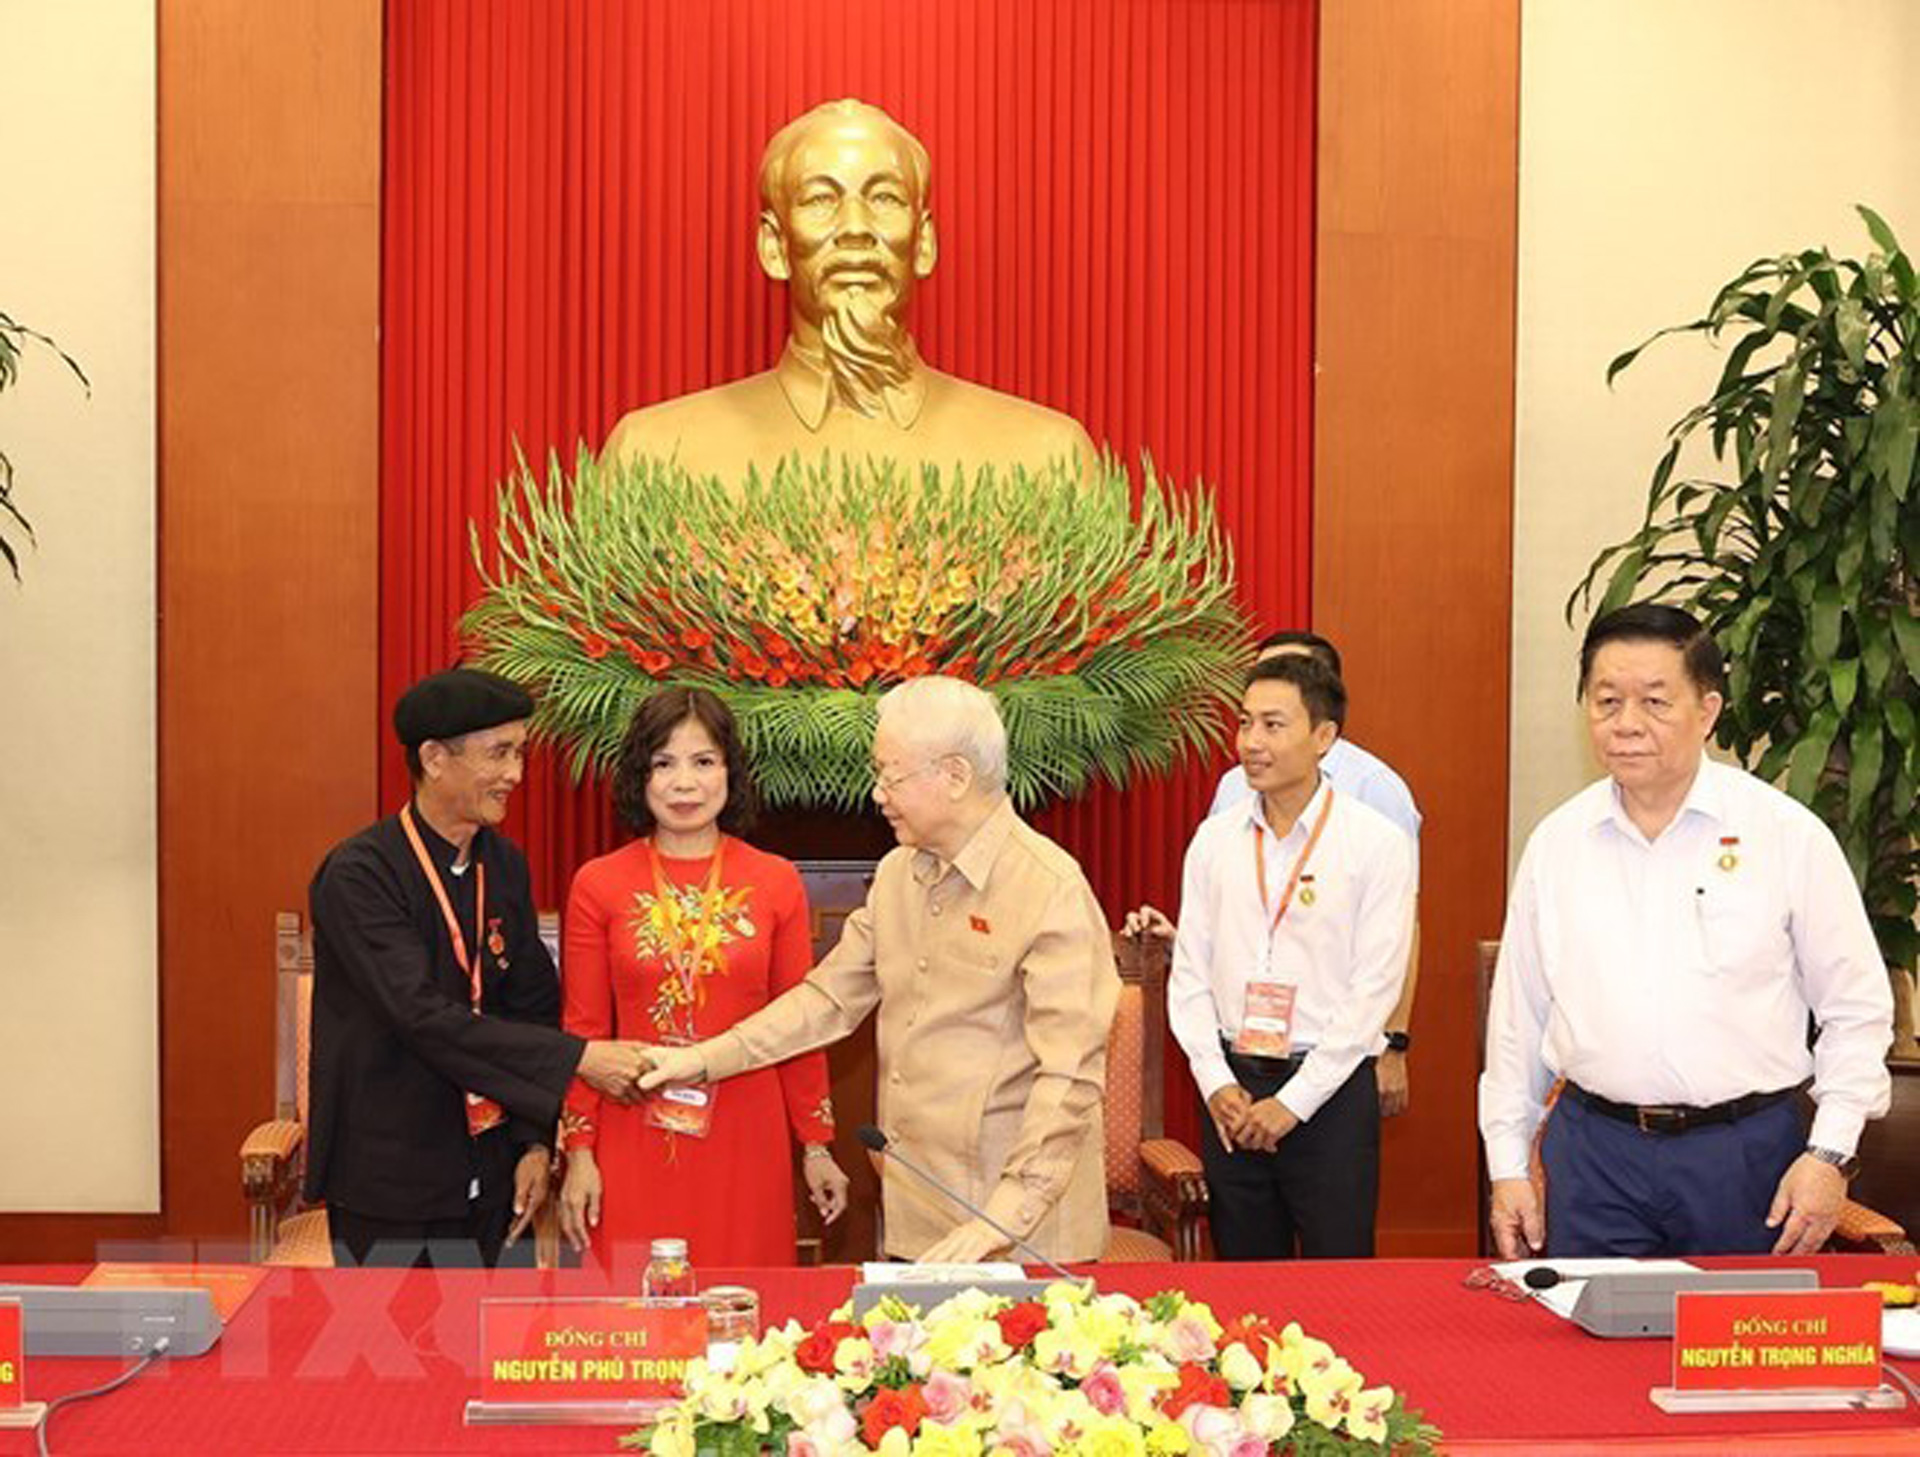 Tổng Bí thư Nguyễn Phú Trọng chúc mừng đại biểu điển hình